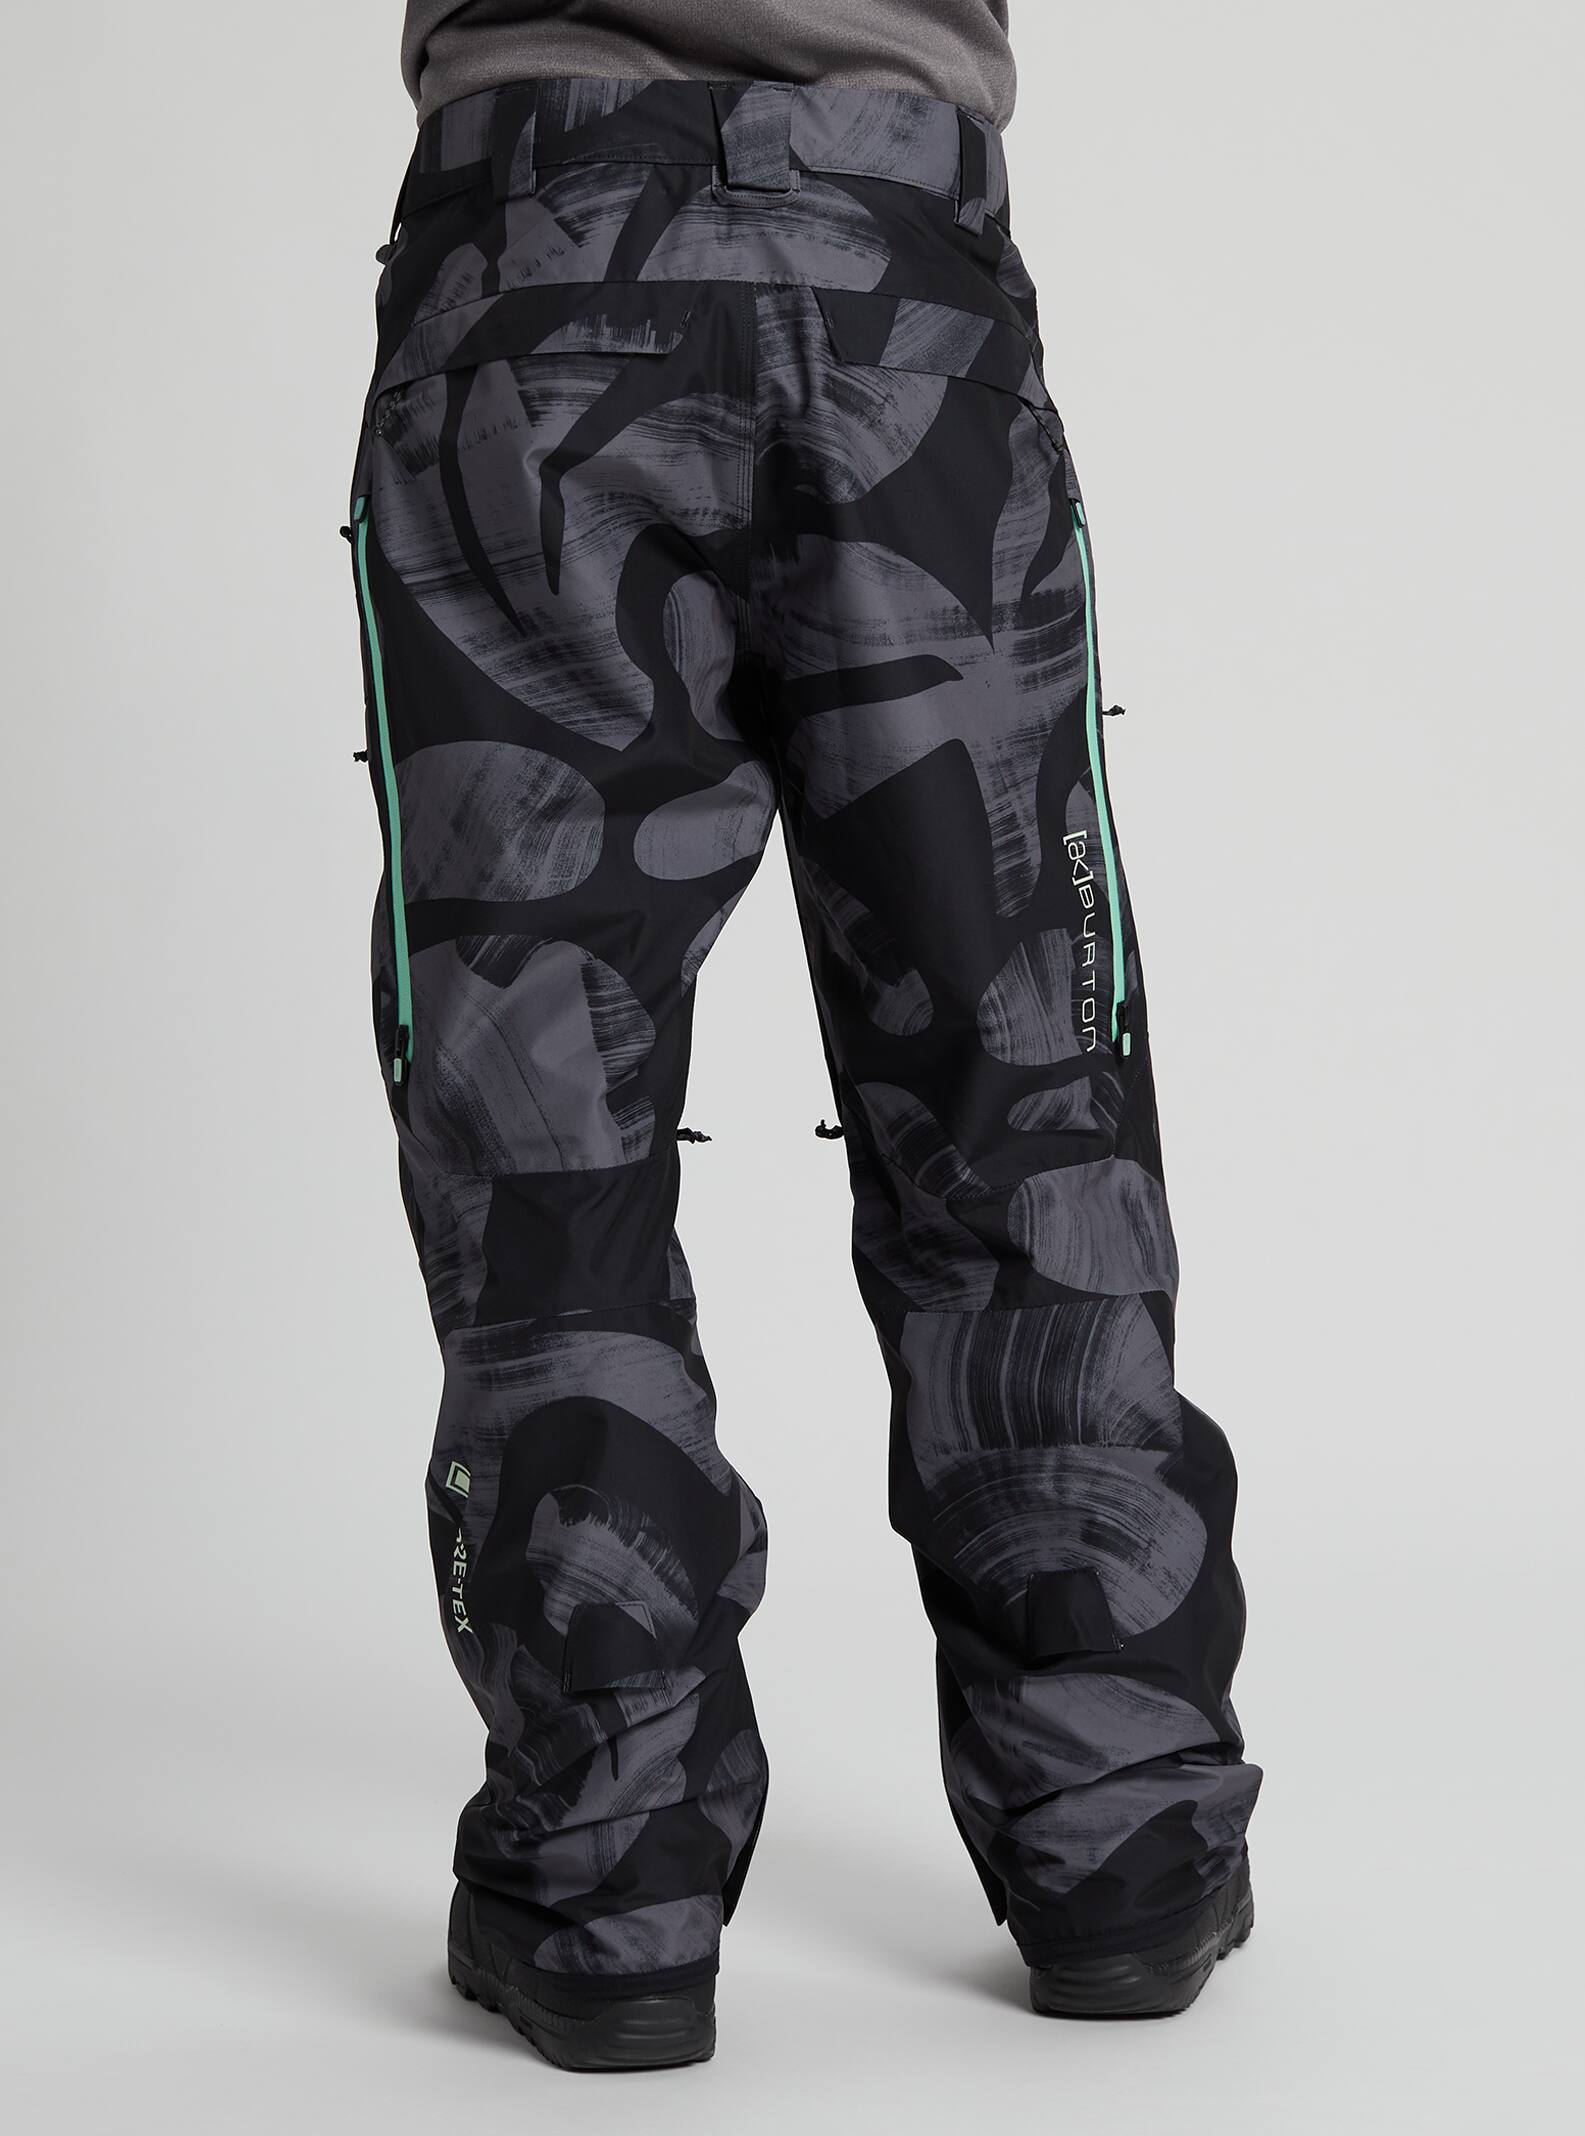 Details about   Burton AK Swash Snowboard Pants Pant Gore-Tex Mens New Camo show original title 